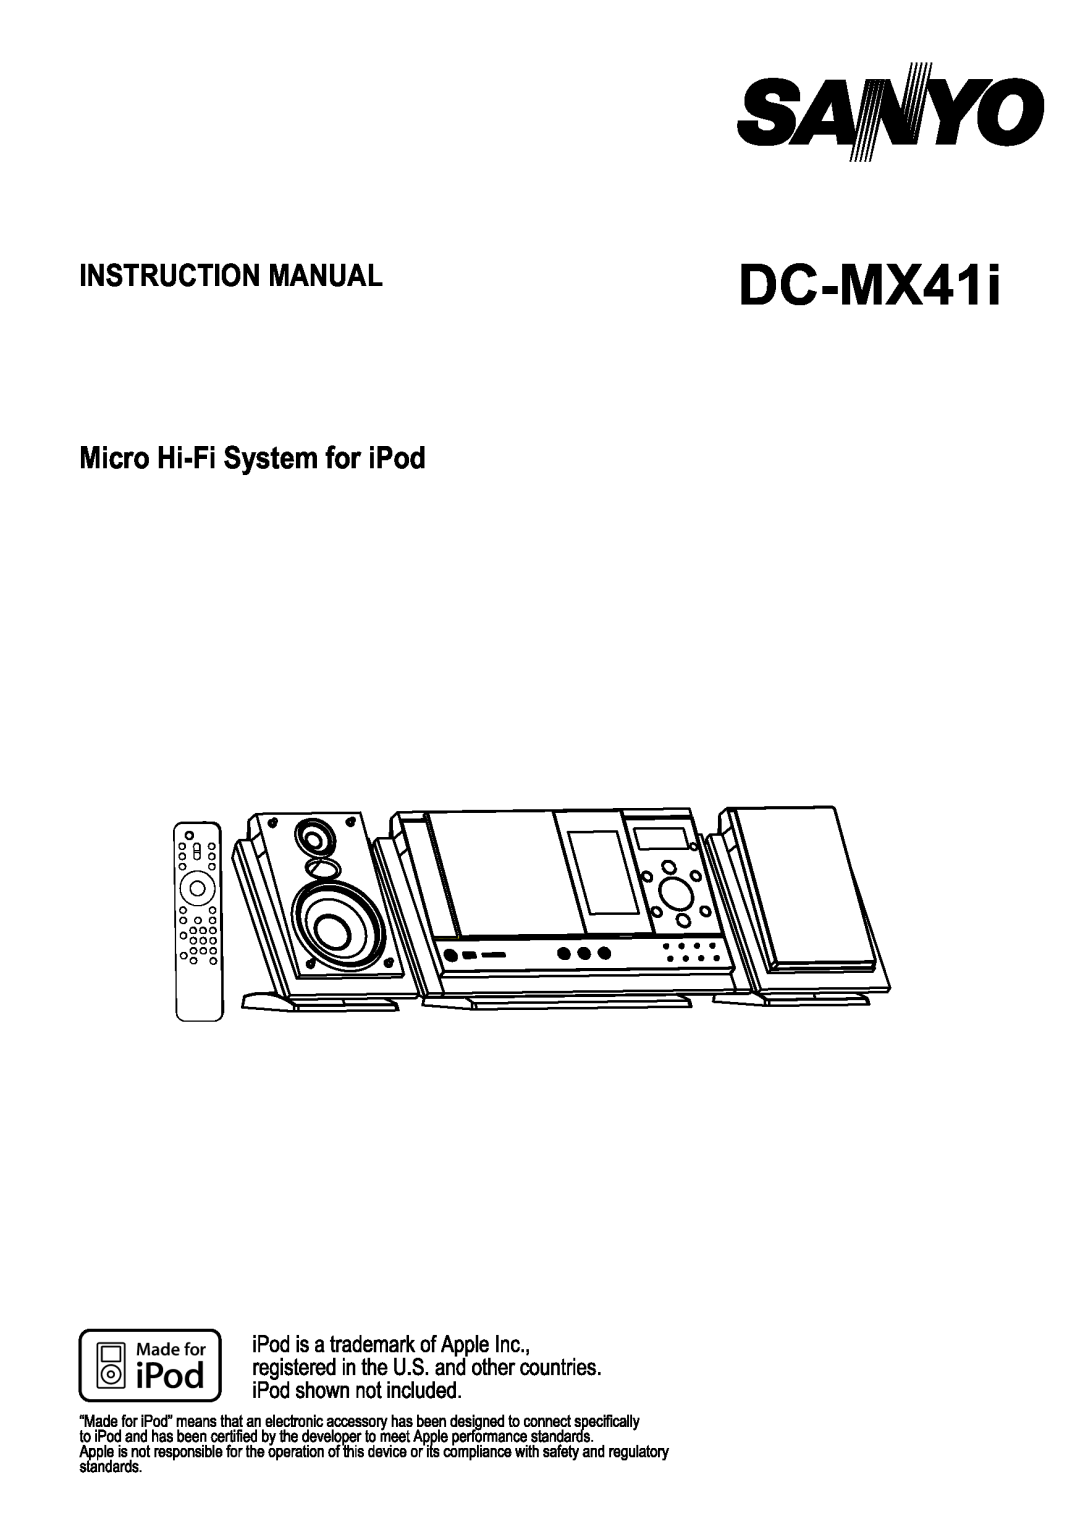 Sanyo DC-MX41i instruction manual 